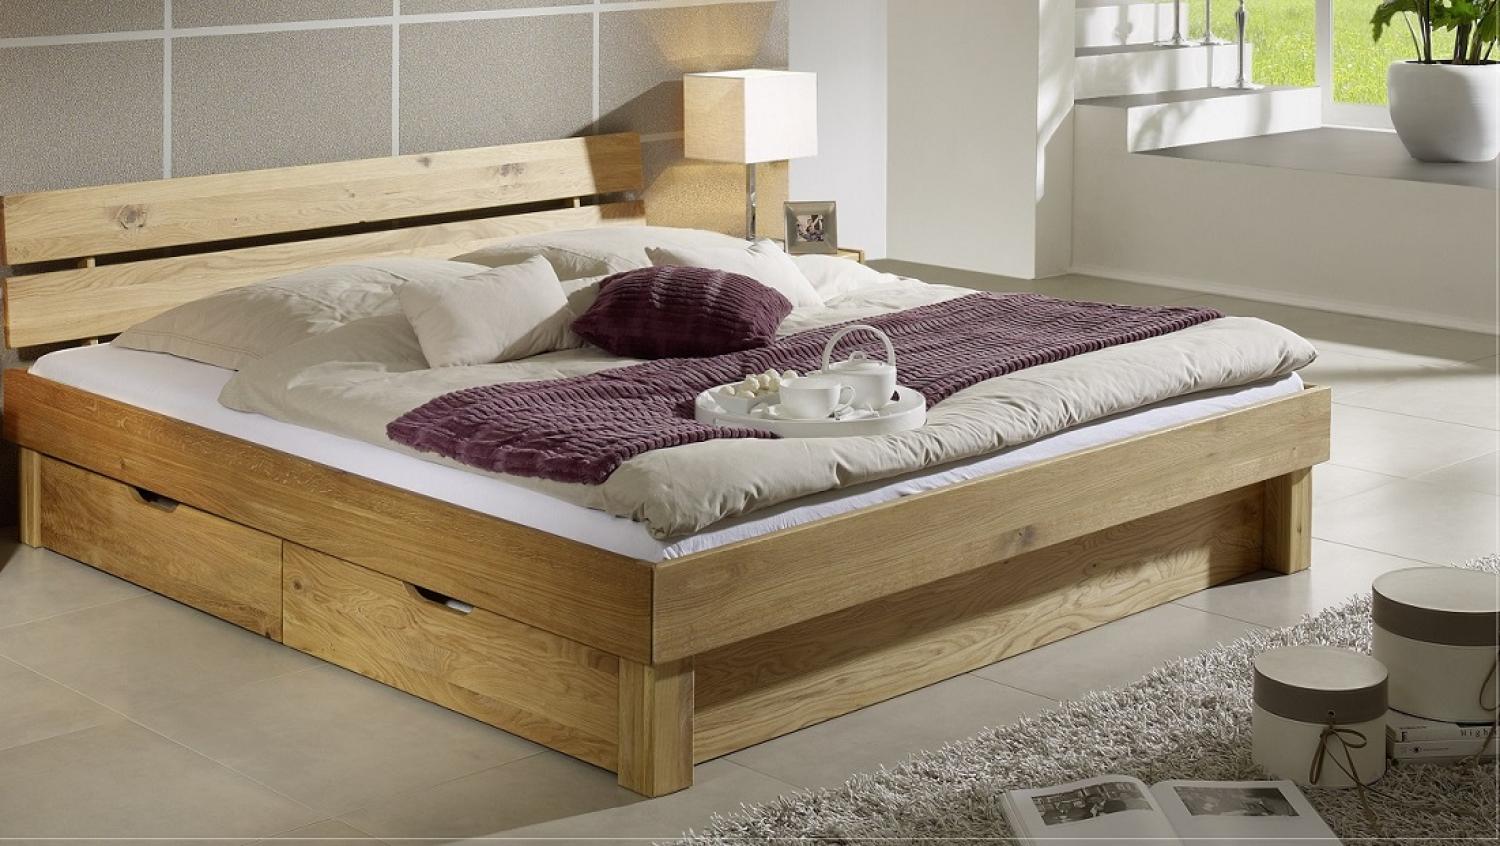 Lewis' Bett mit Bettkästen, Wildeiche massiv, 140 x 200 cm, Kopfteil geteilt Bild 1